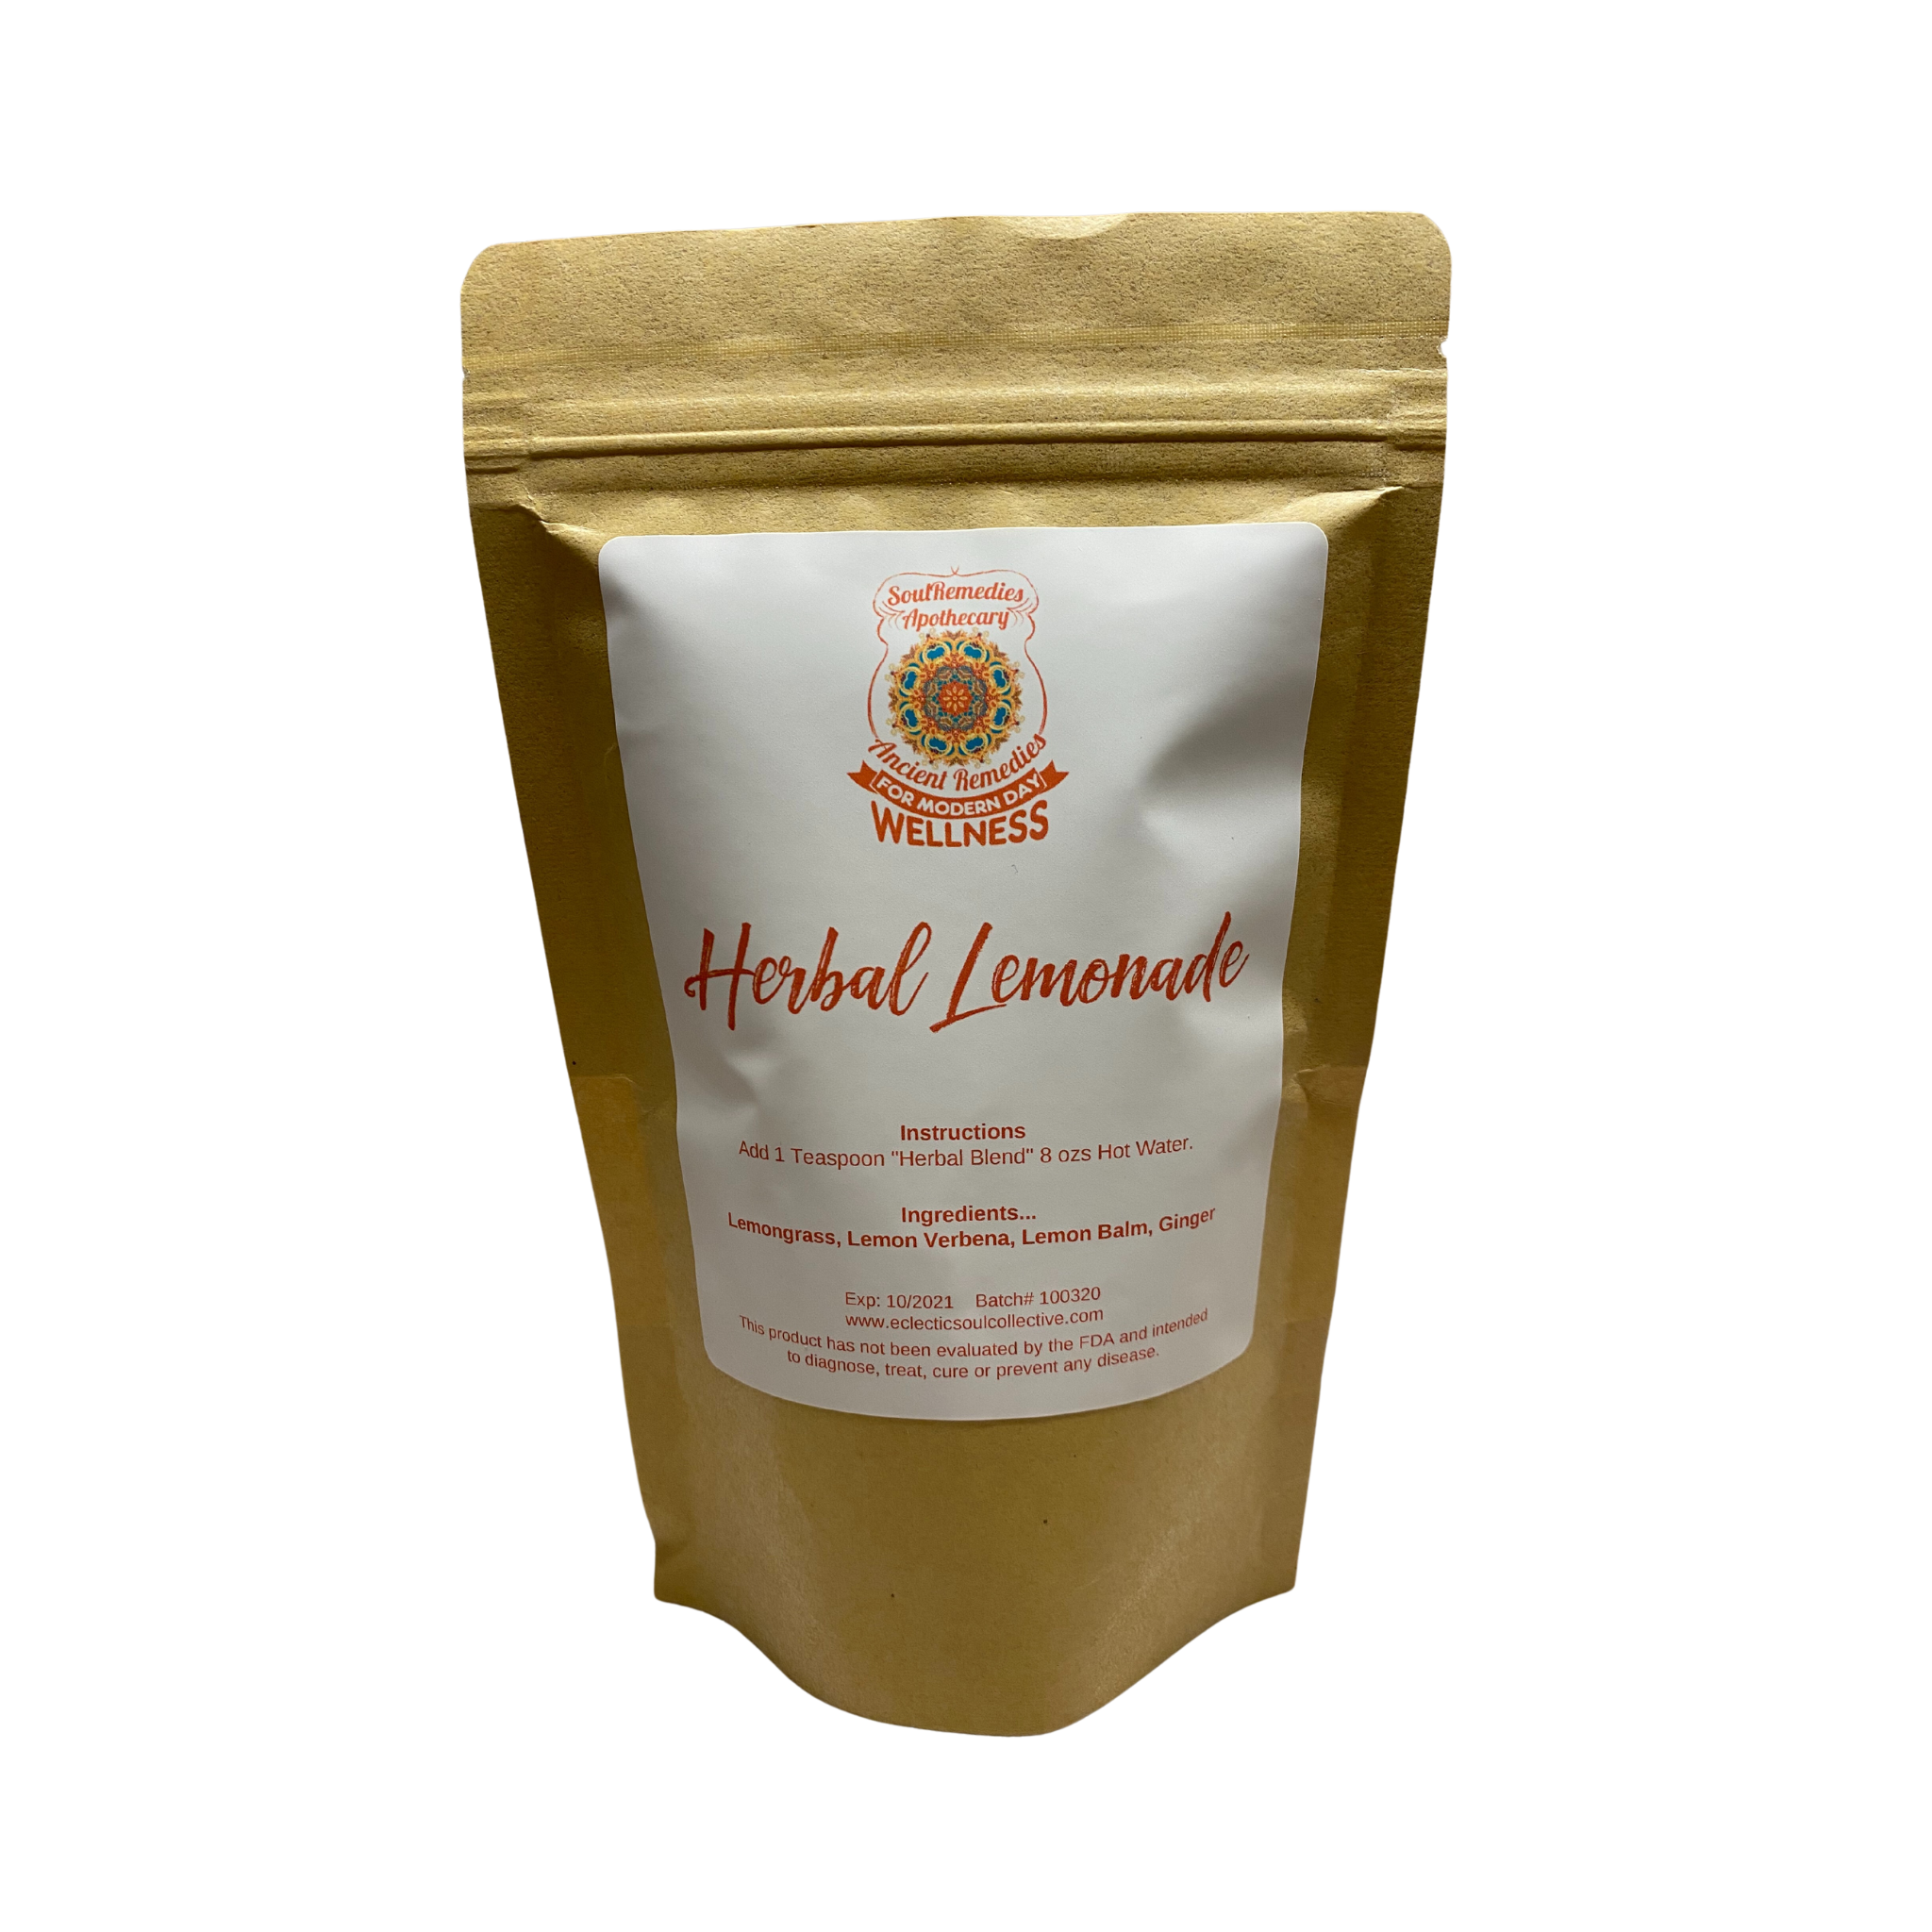 Herbal Lemonade RemeTea